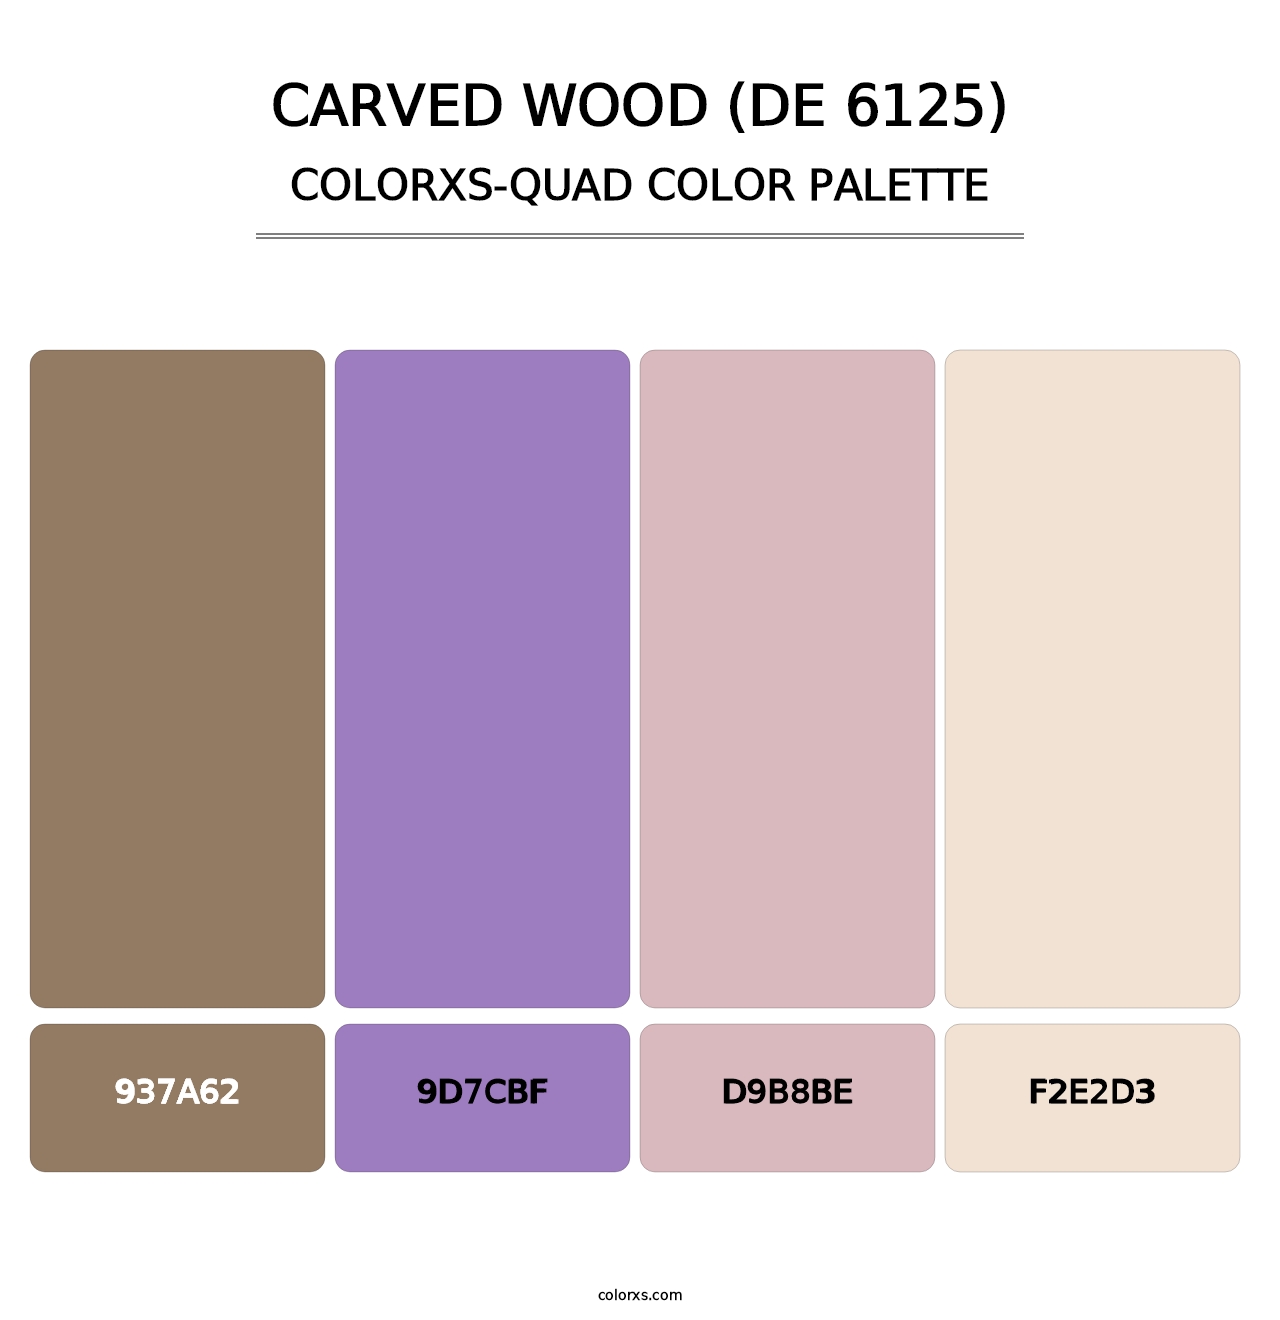 Carved Wood (DE 6125) - Colorxs Quad Palette